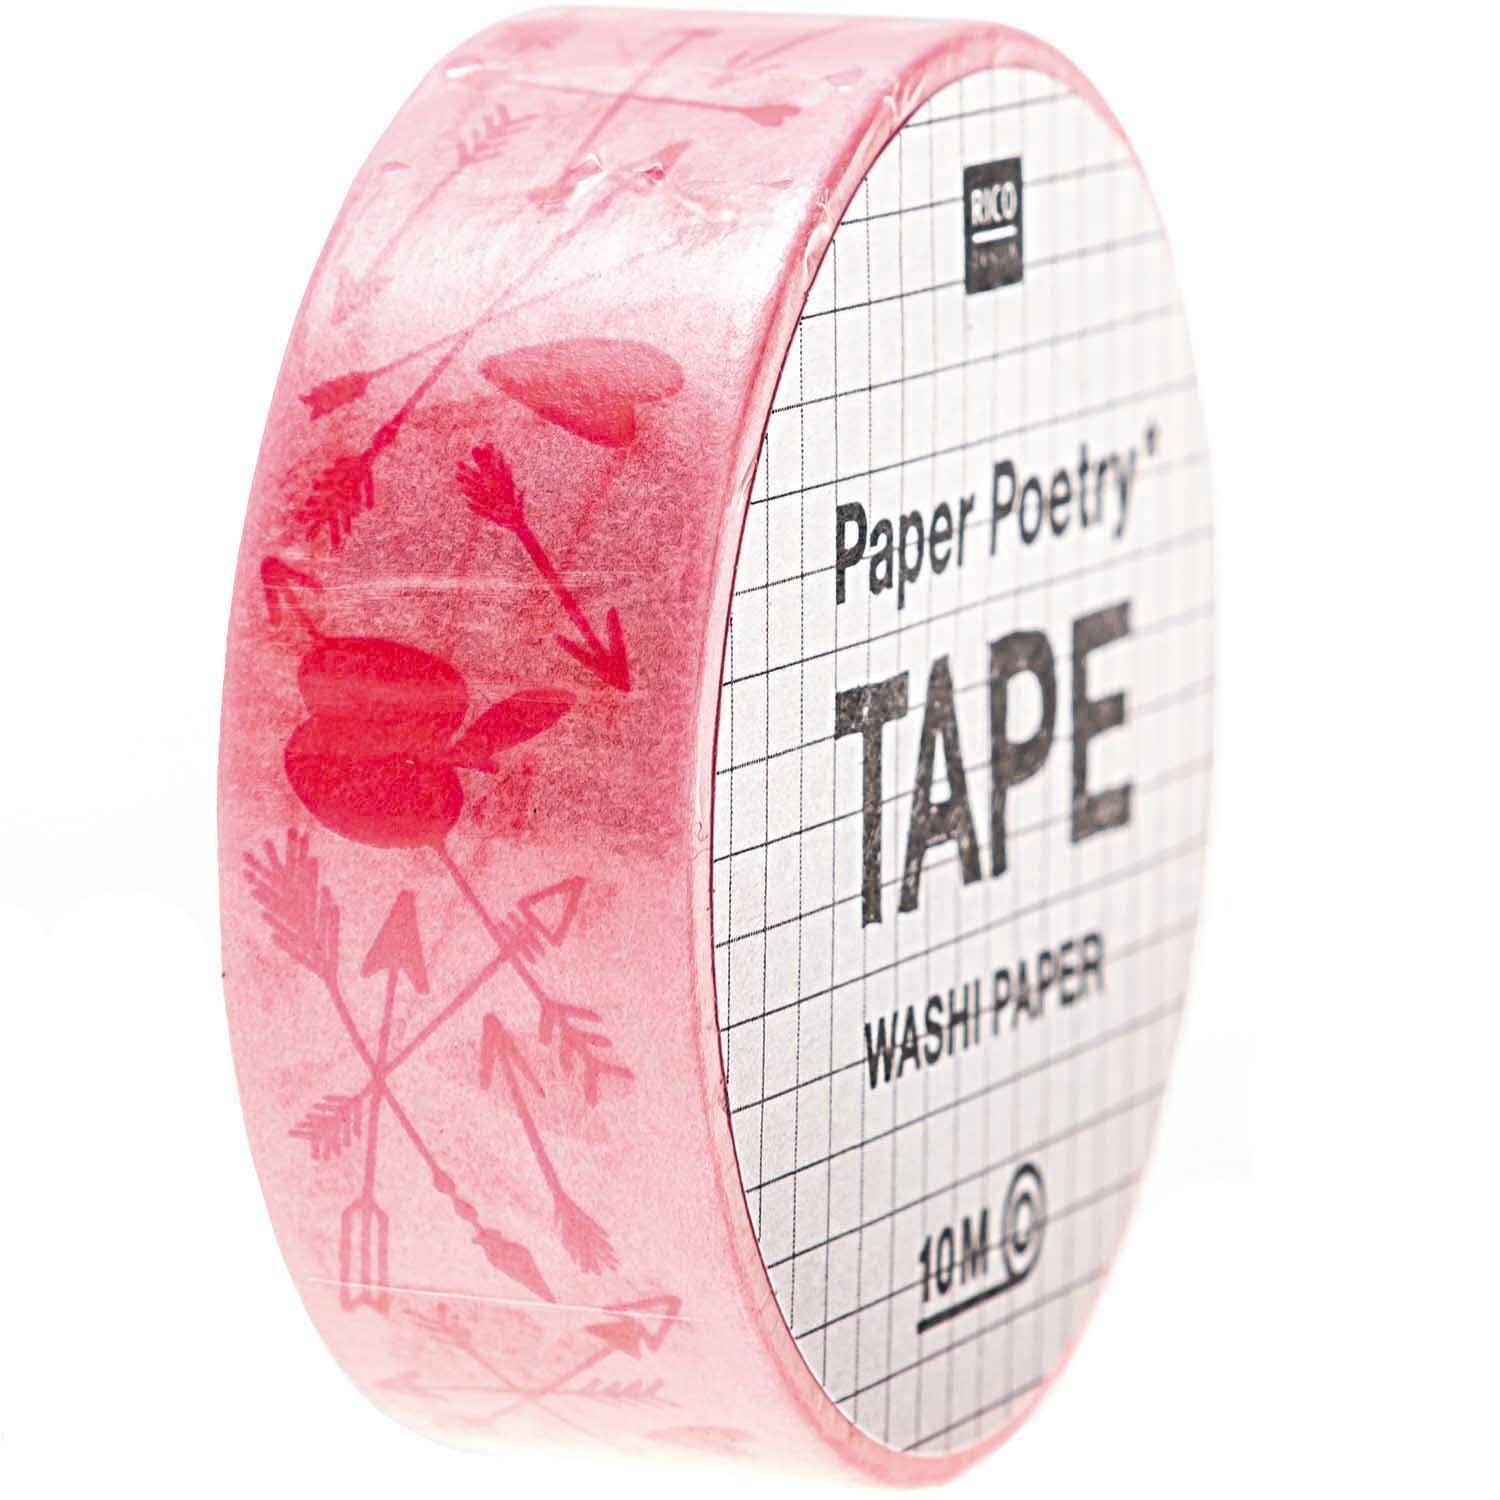 Paper Poetry Tape It must be love Pfeile 1,5cm 10m